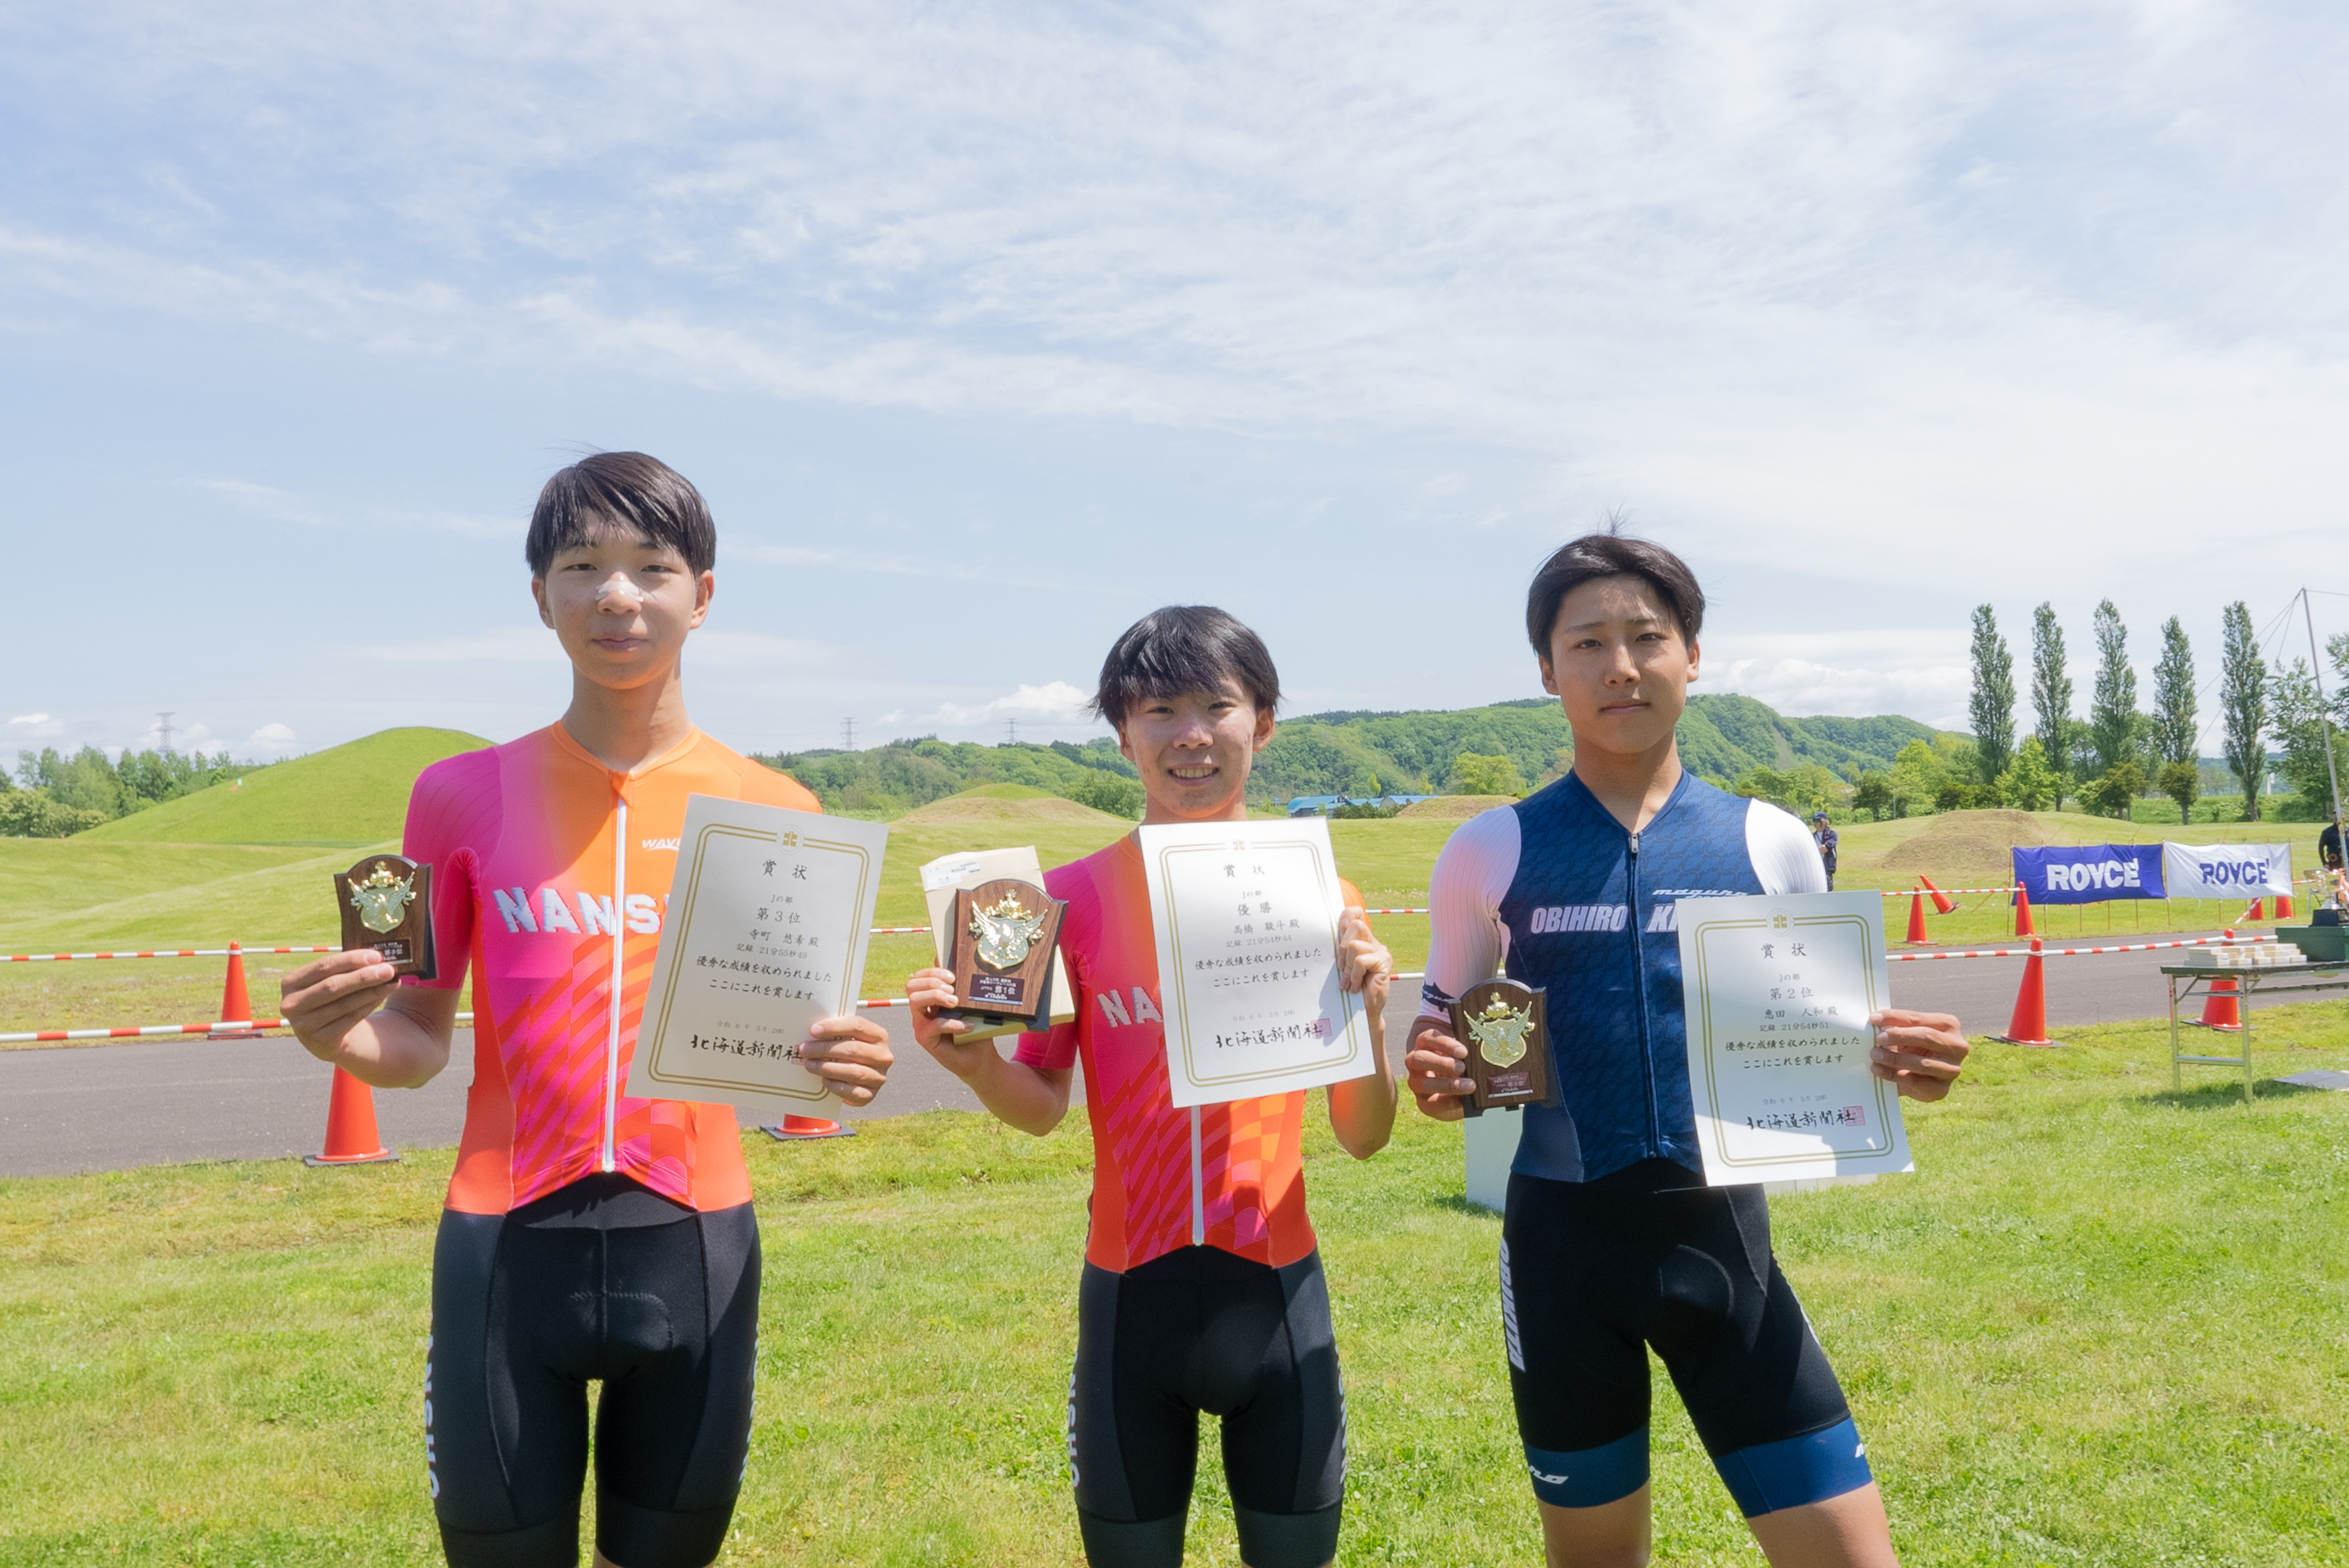 5月26日に開催された道新杯自転車ロードレース大会に参戦しました。